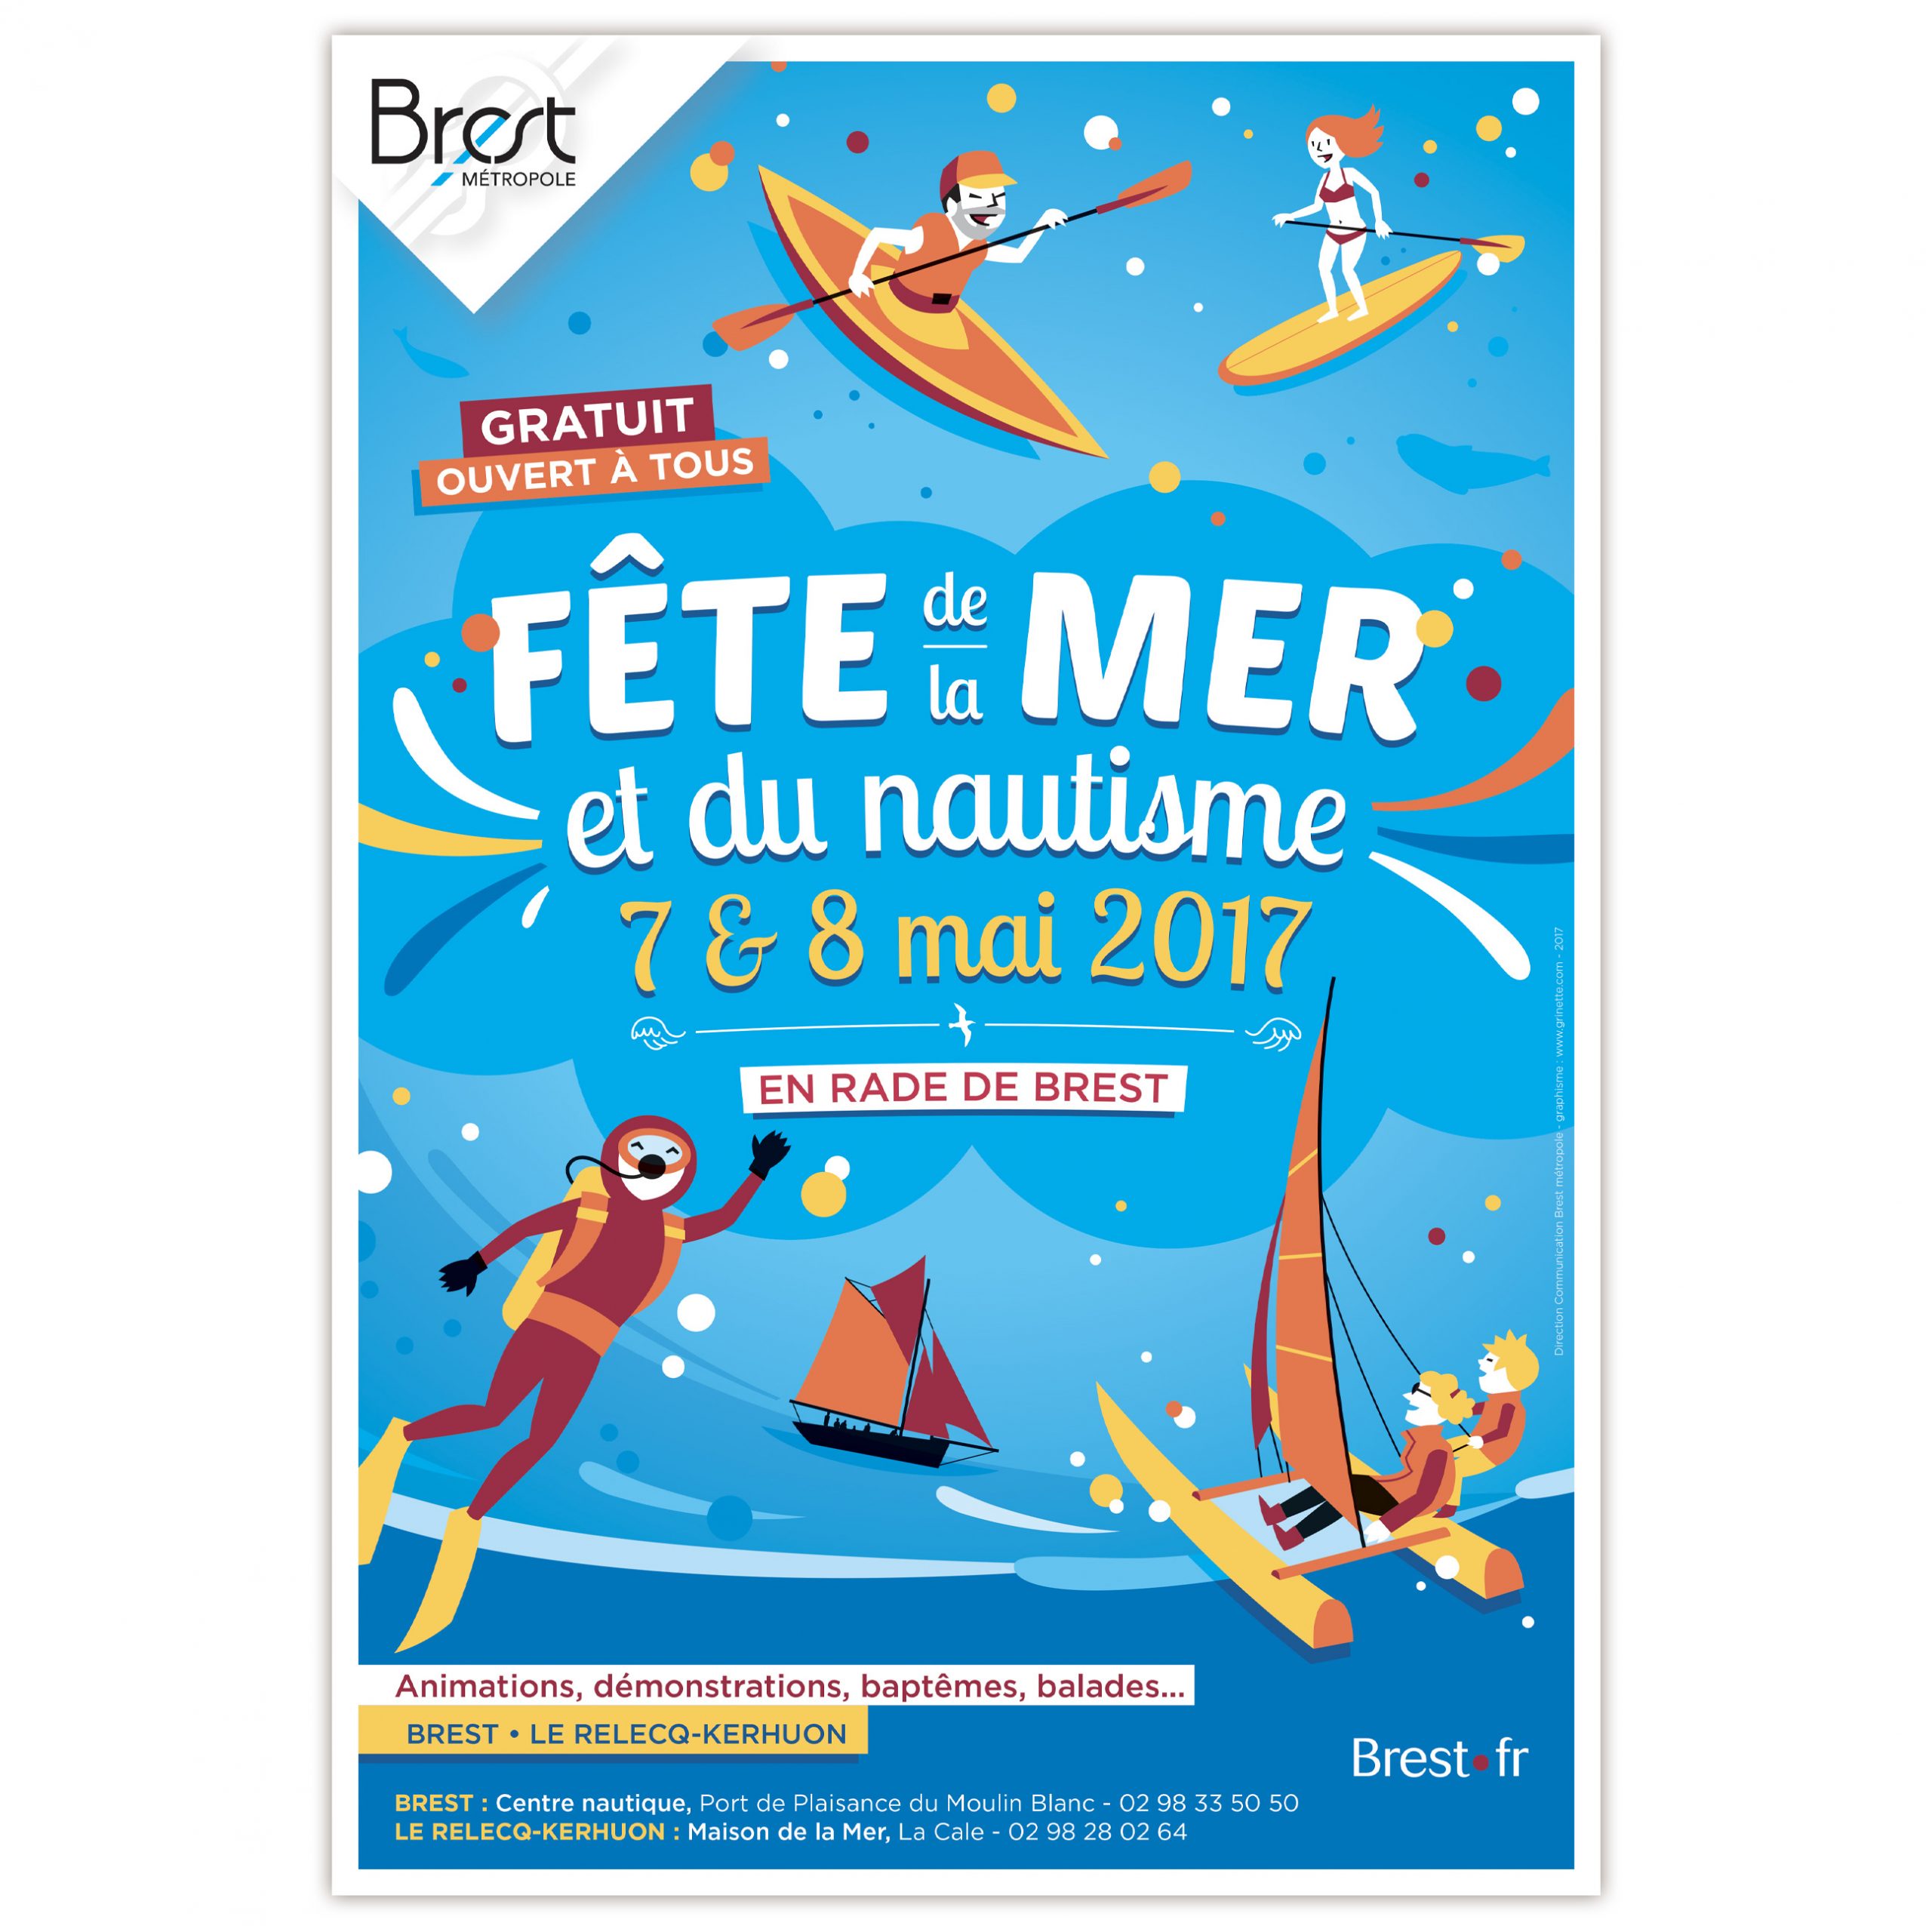 Brest métropole, Fête de la mer et du nautisme, animations nautiques en rade de Brest, création graphique affiche, flyer A5 4 pages